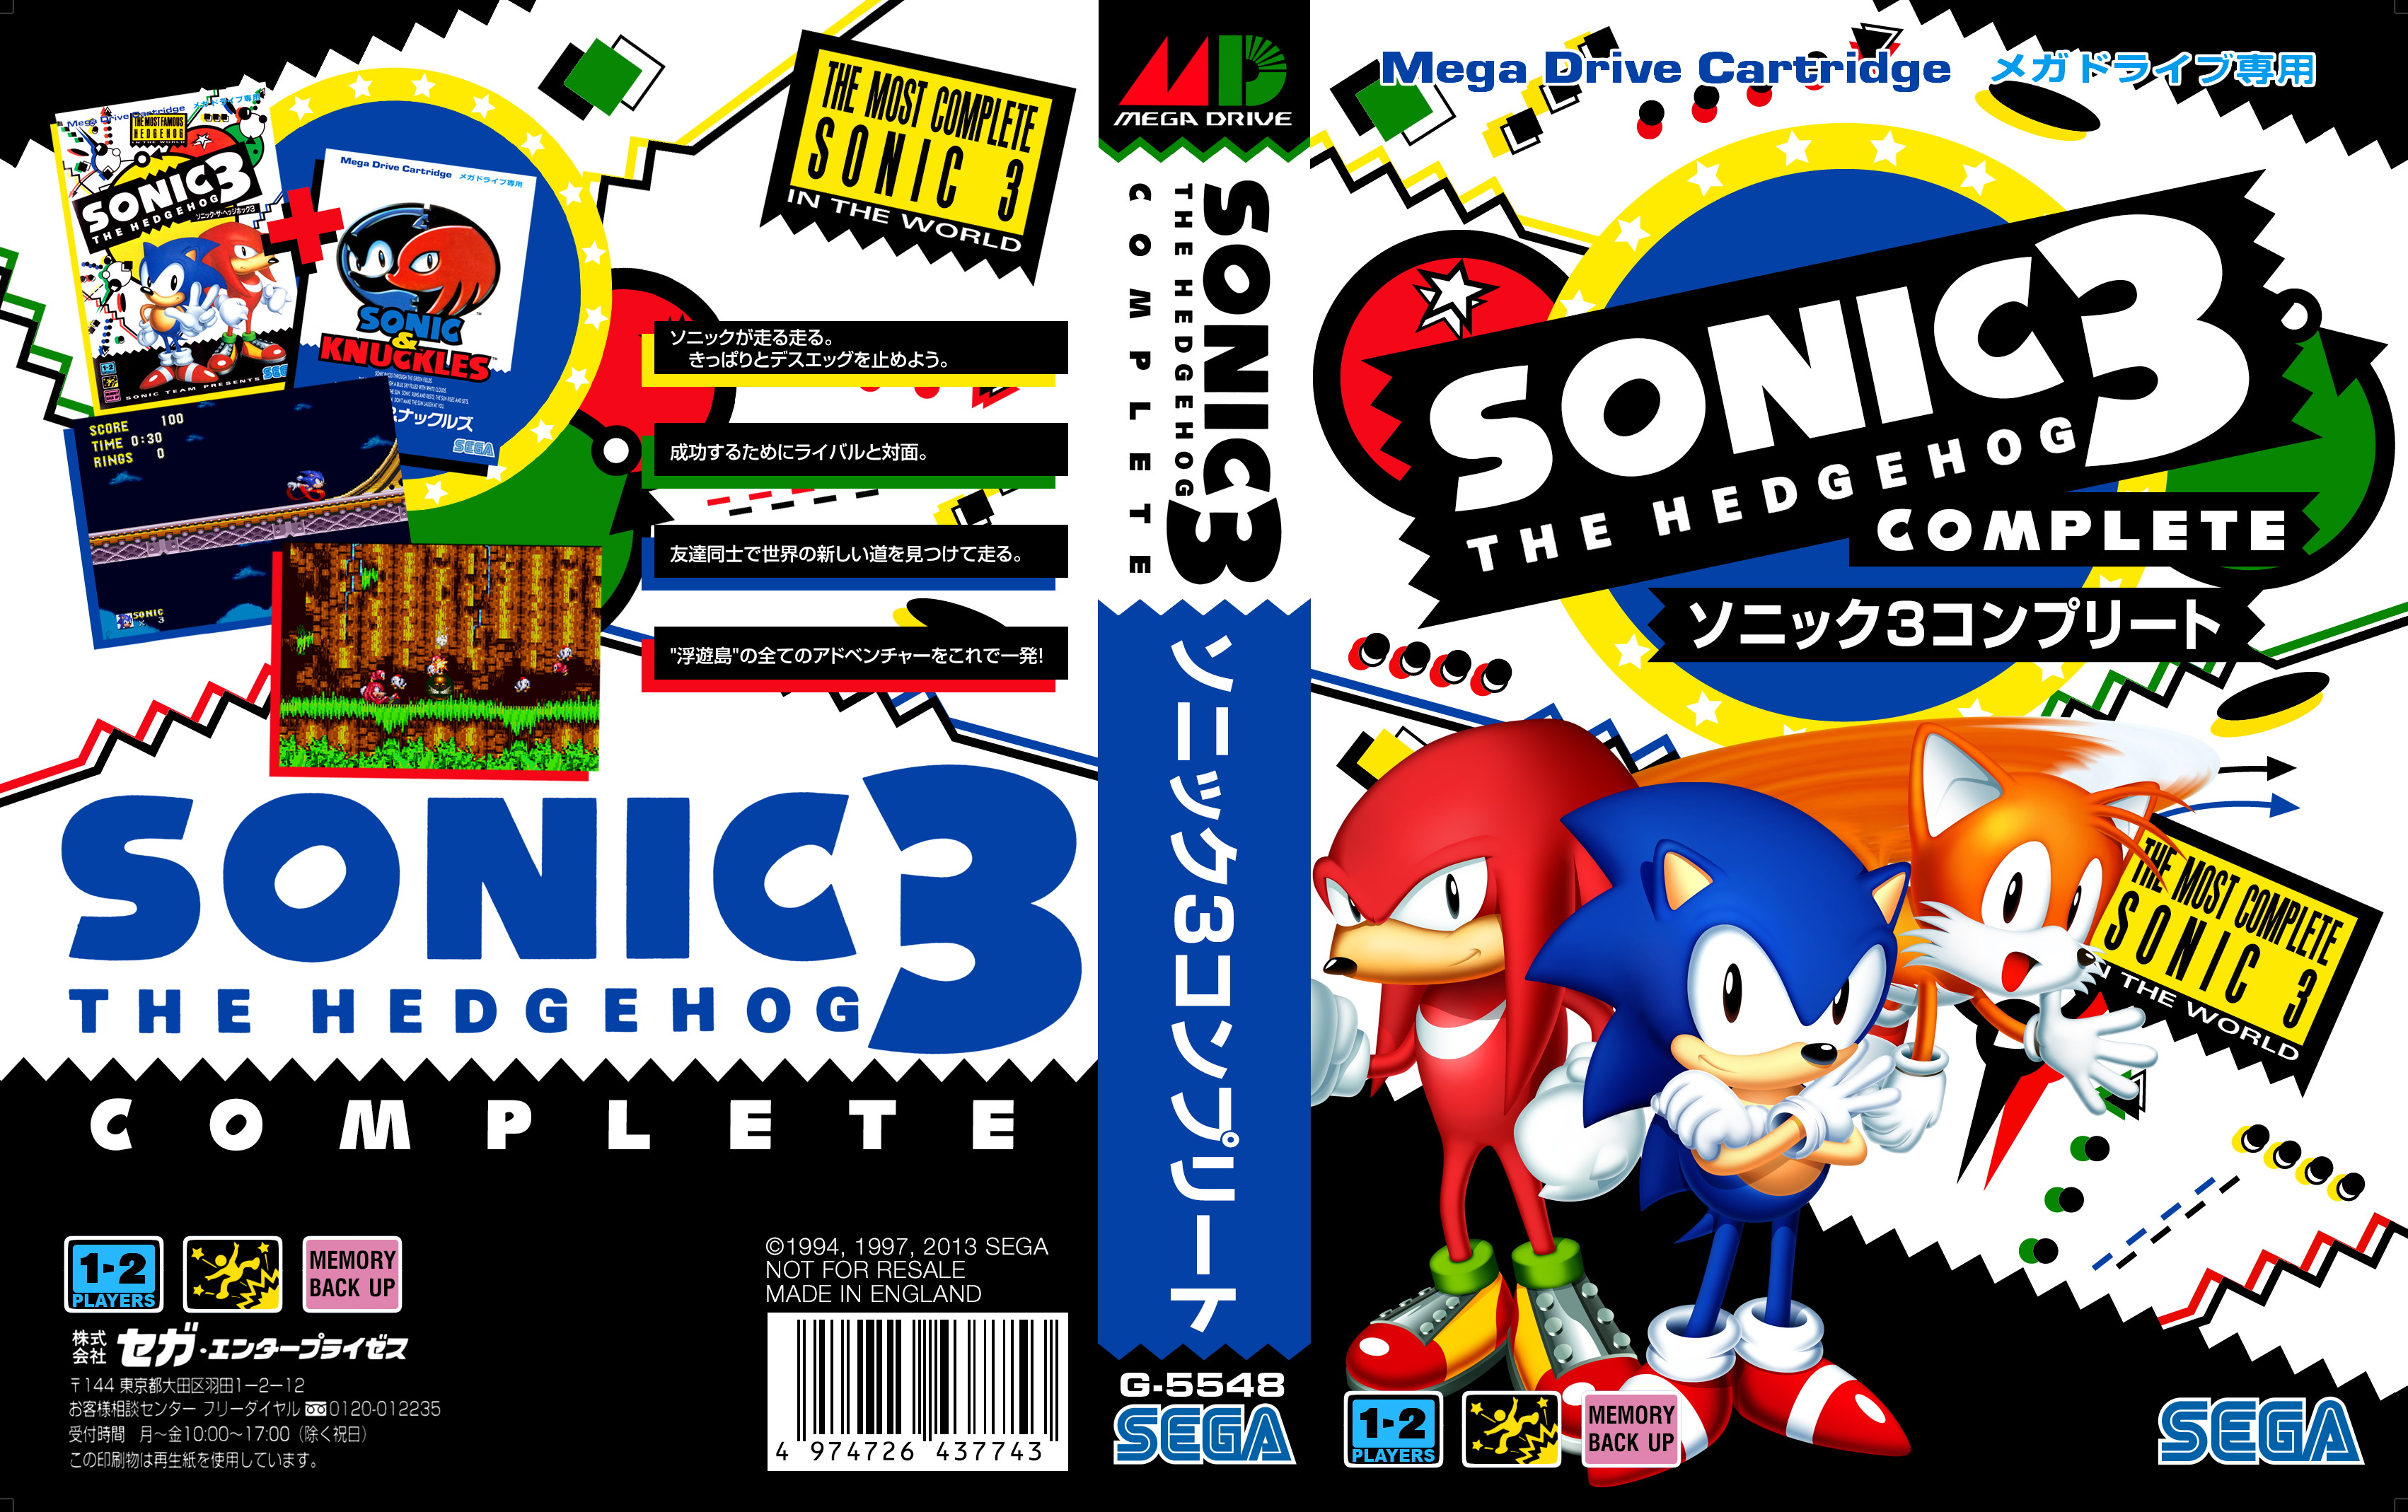 Sonic The Hedgehog 3 Complete. Fan Games 'n' Hacks